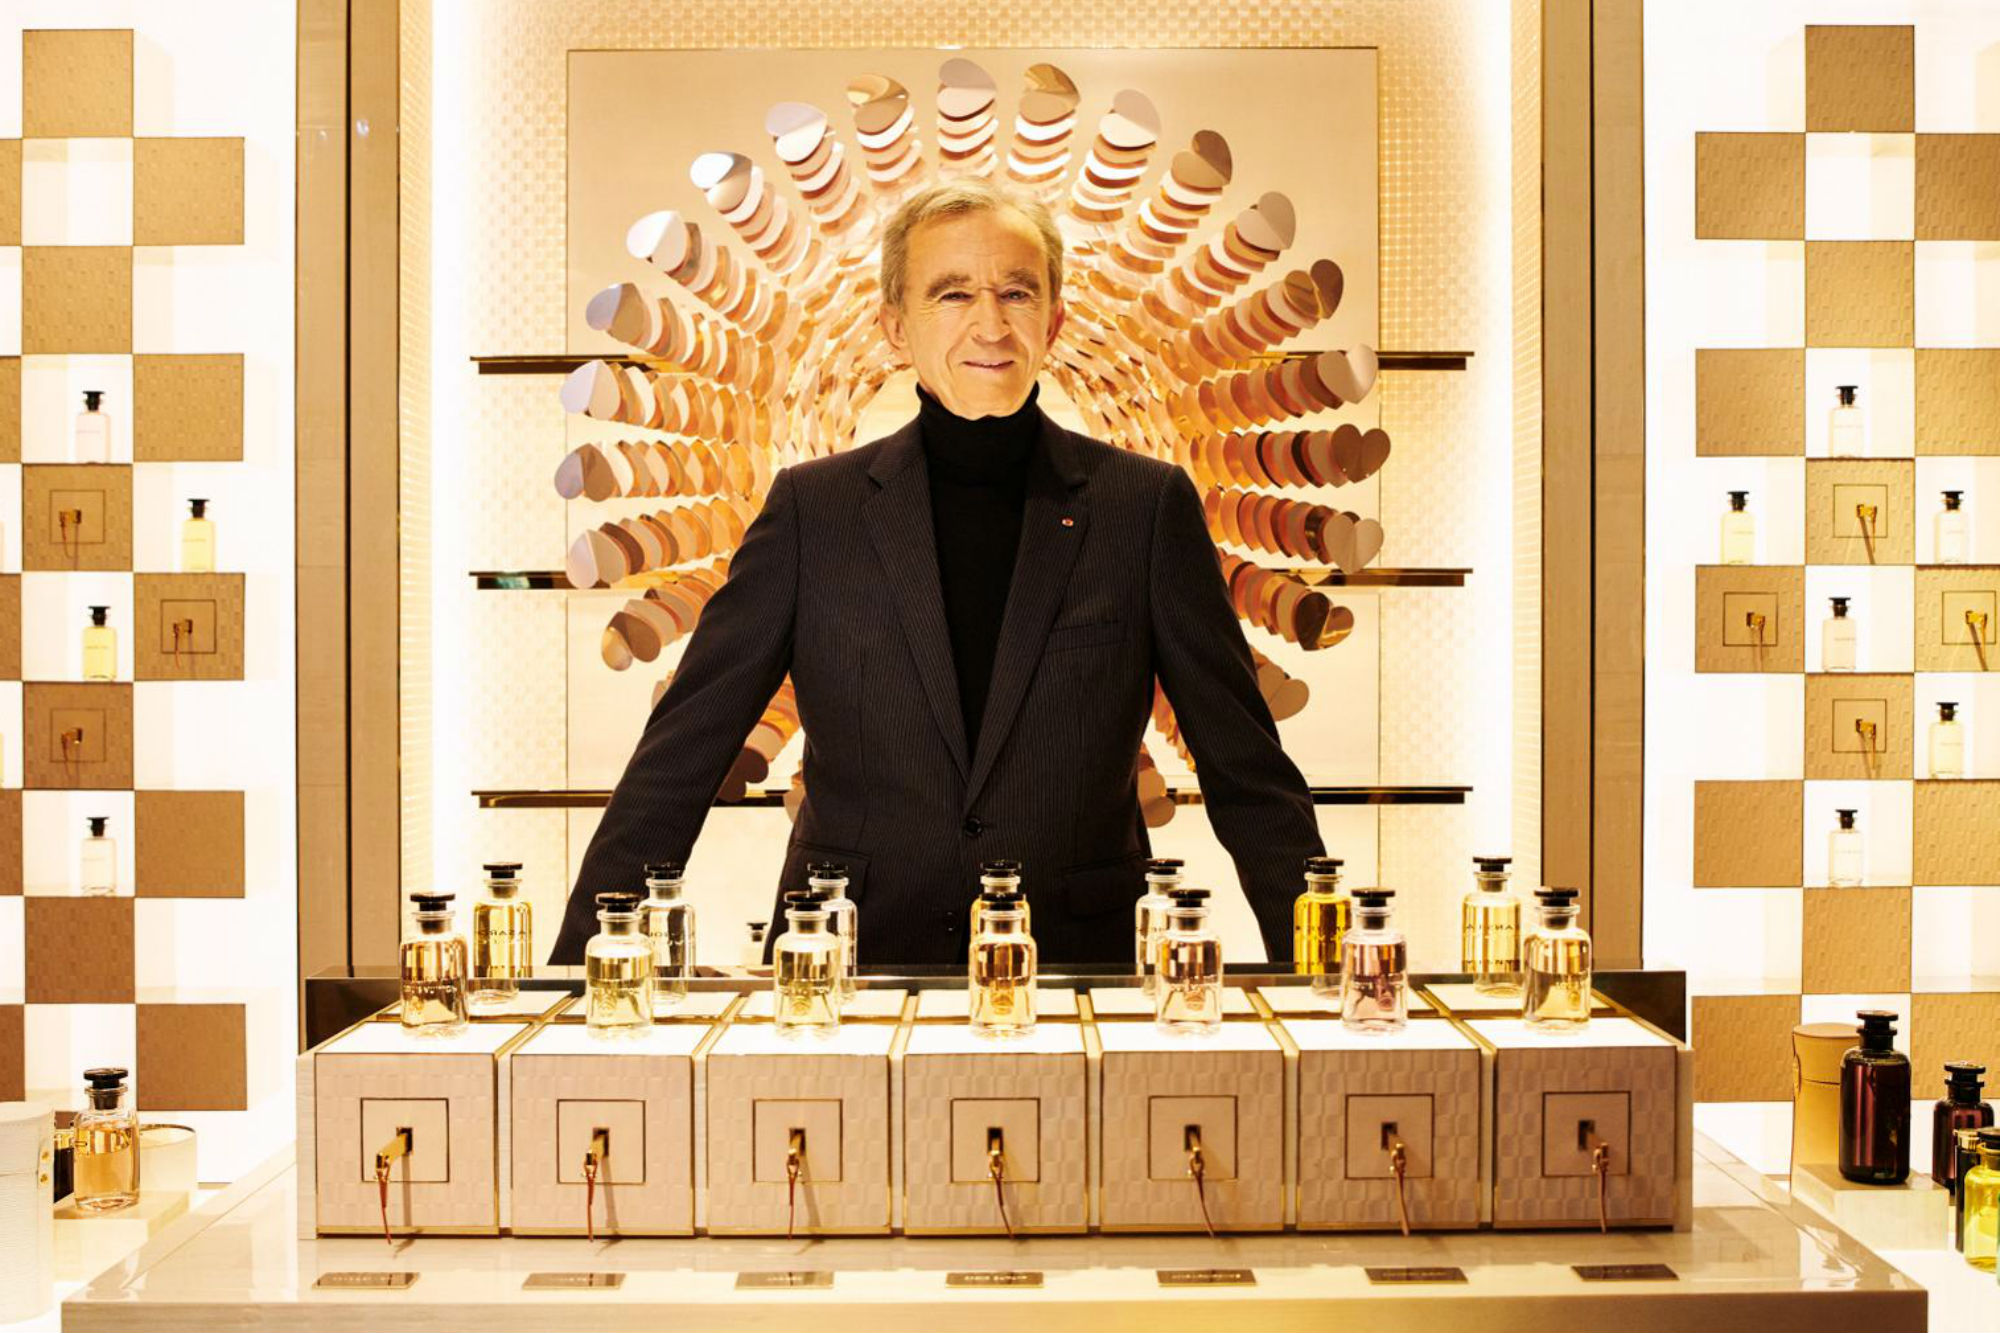 Dono da Louis Vuitton e terceiro mais rico do mundo: conheça Bernard Arnault